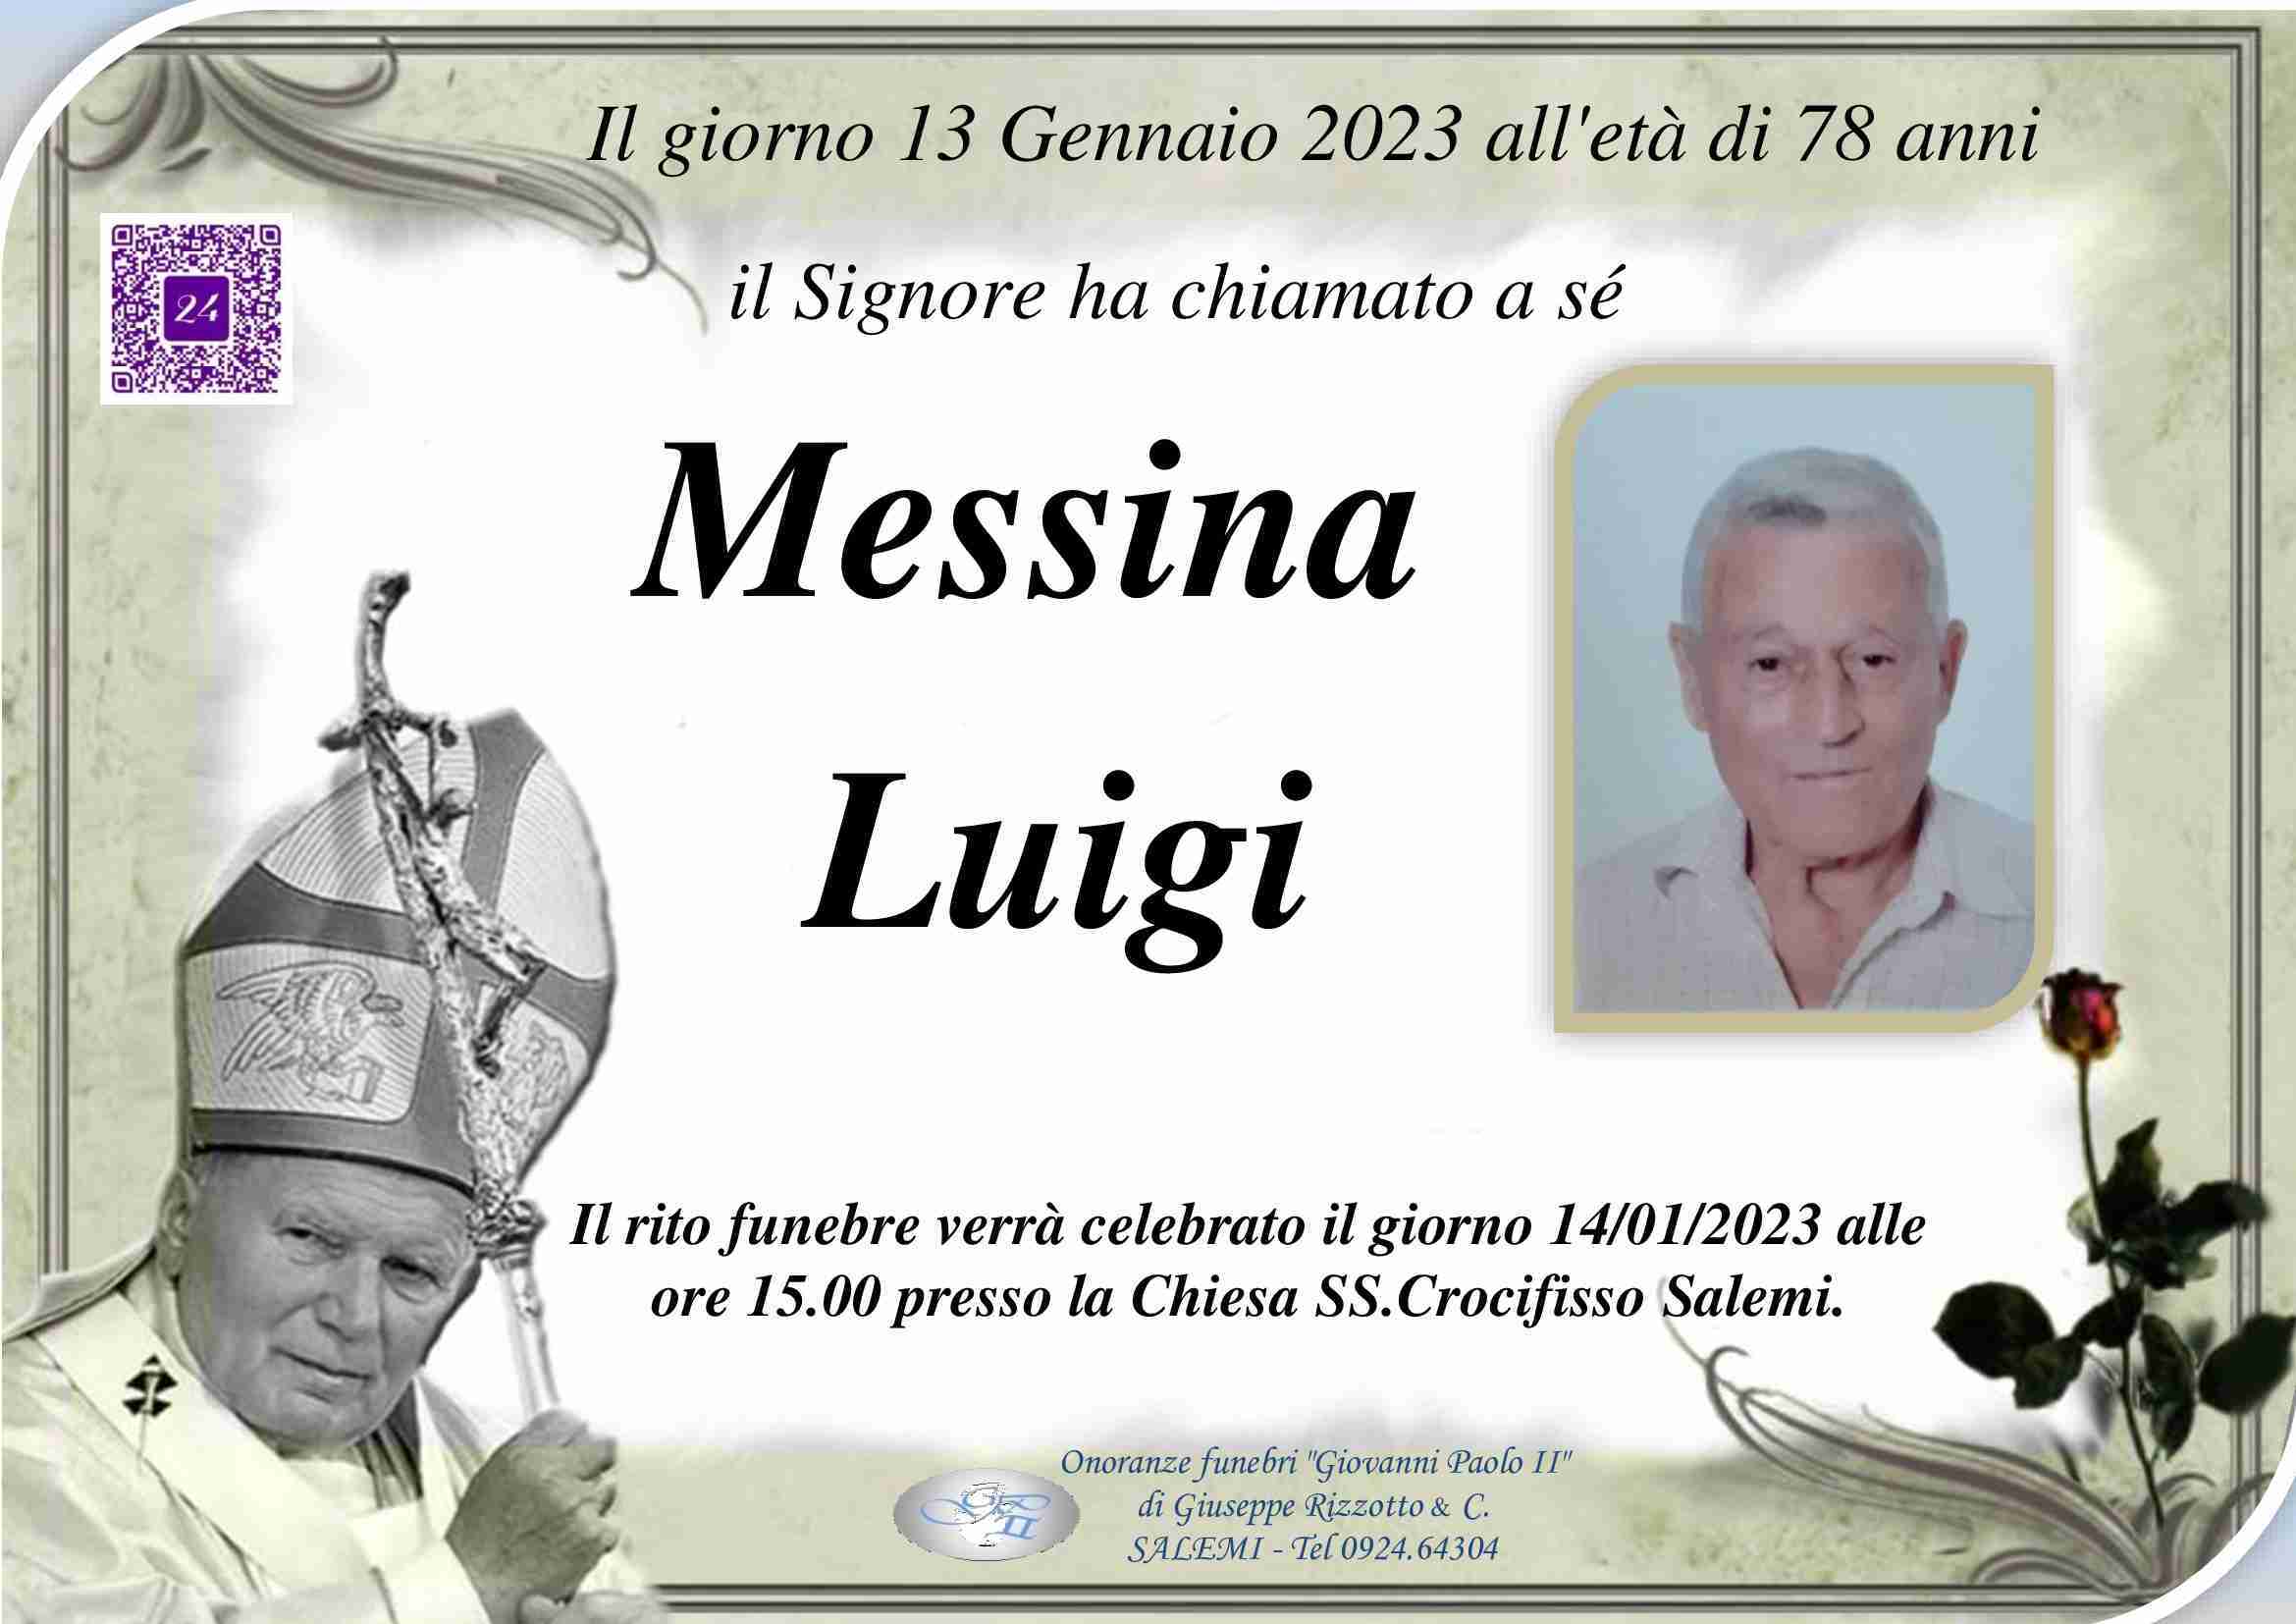 Luigi Messina